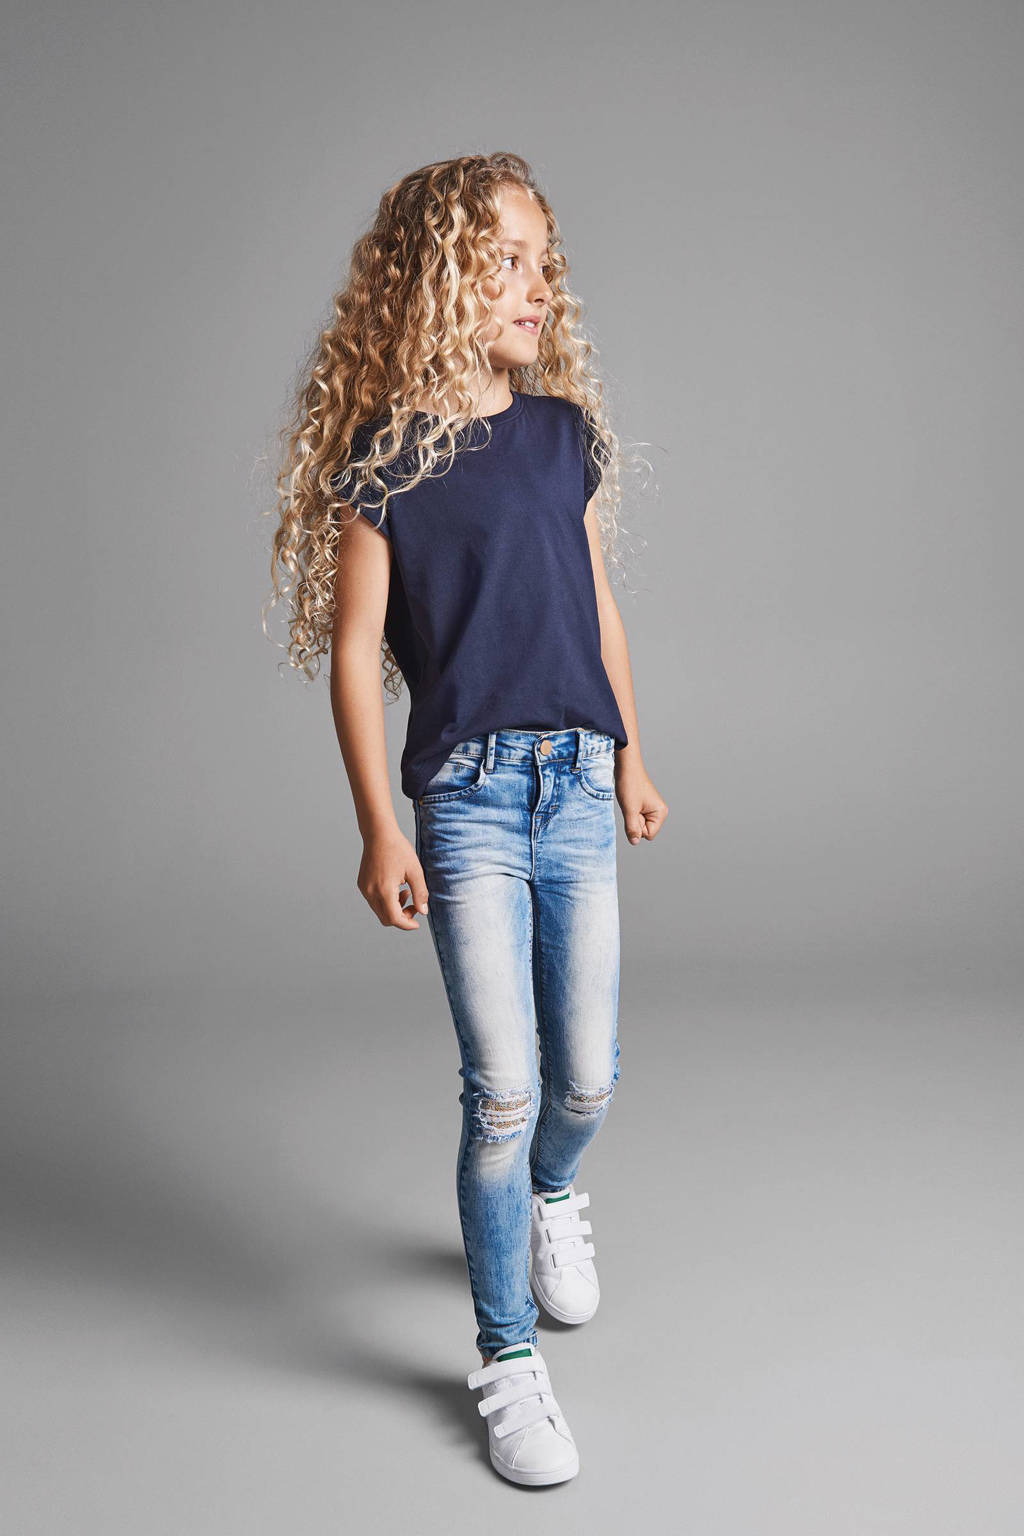 stopverf optie poort NAME IT KIDS Polly skinny fit jeans | wehkamp